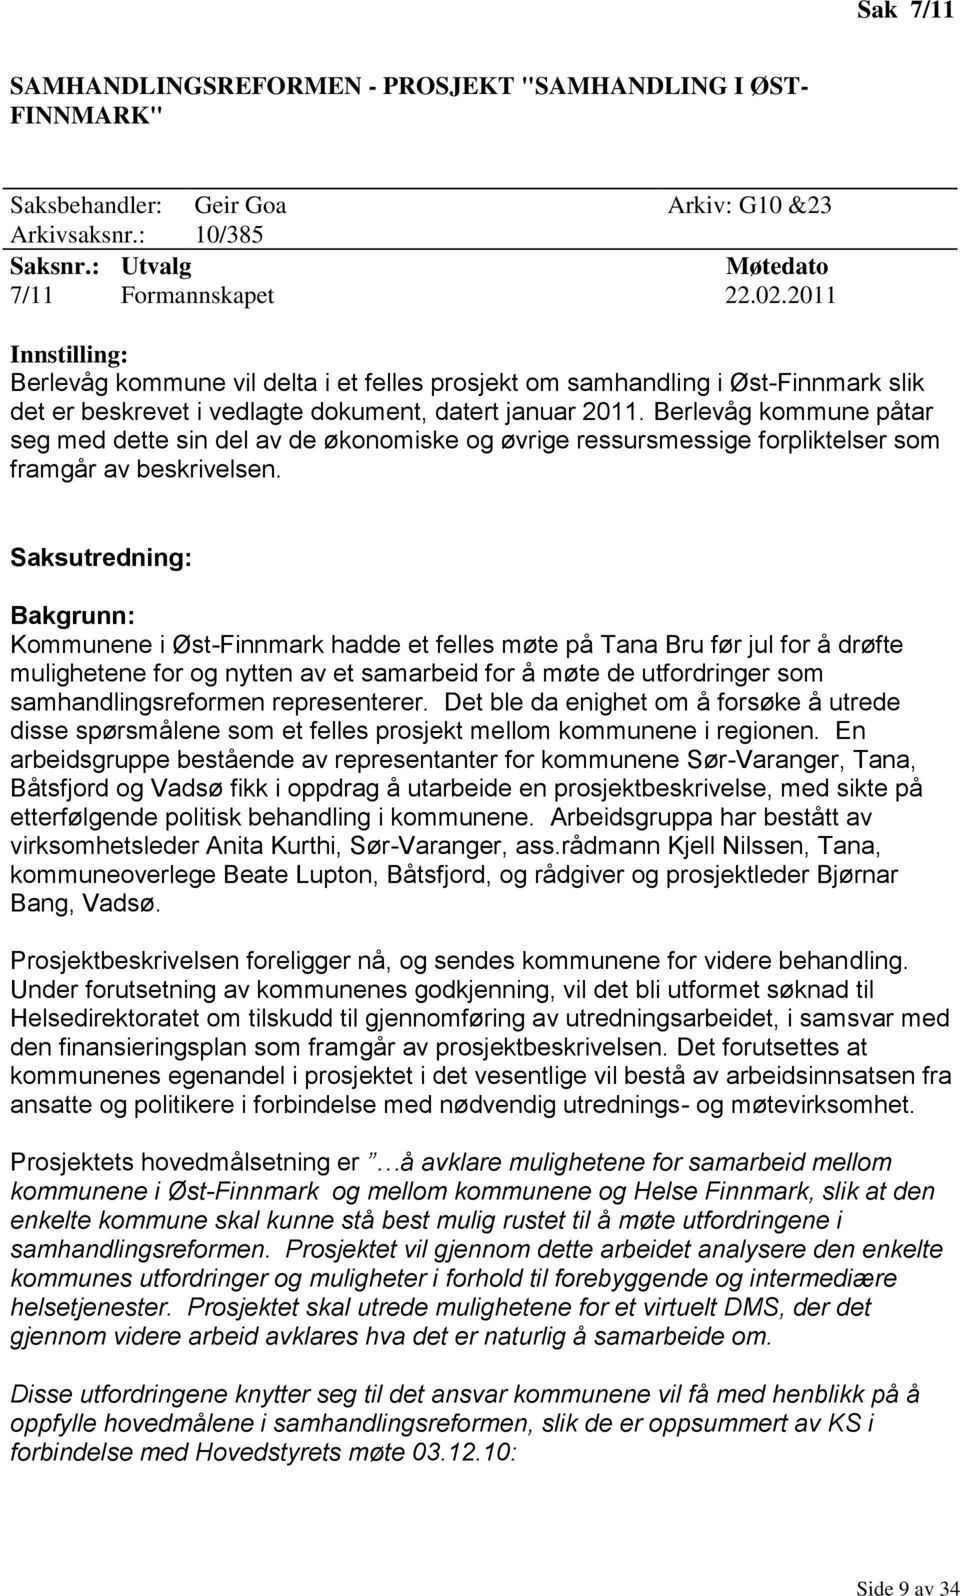 Berlevåg kommune påtar seg med dette sin del av de økonomiske og øvrige ressursmessige forpliktelser som framgår av beskrivelsen.